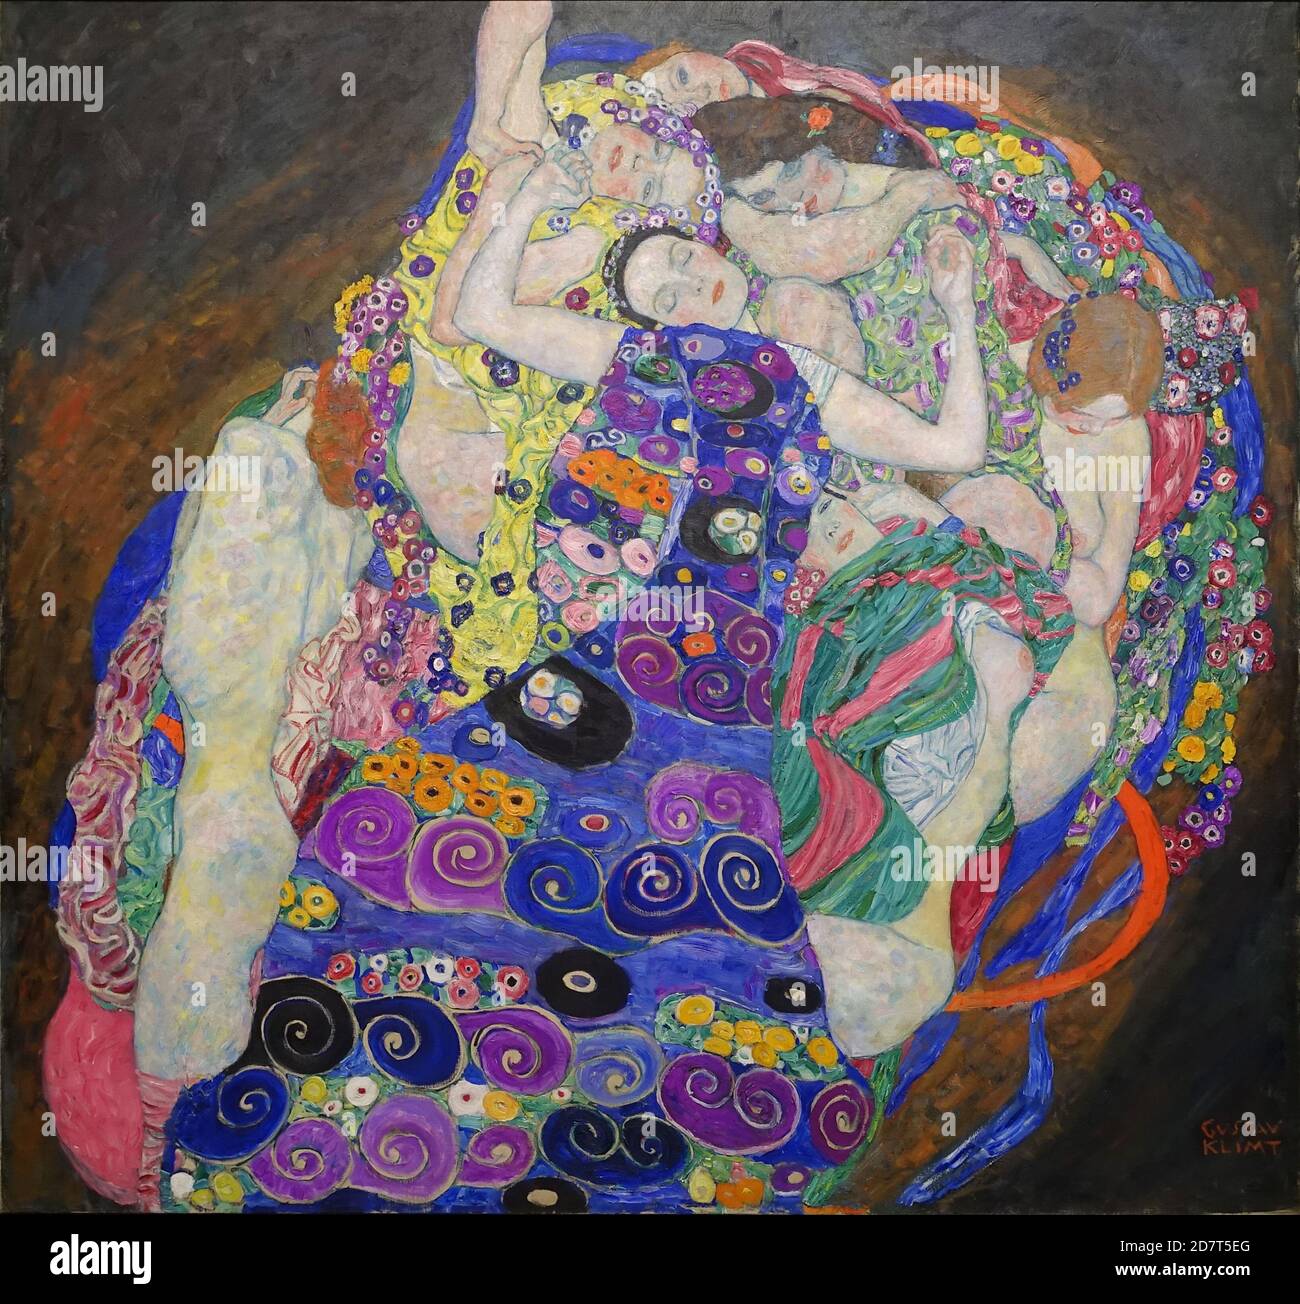 Titel: Jungfrau Schöpfer: Gustav Klimt Datum: 1913 Medium: Öl auf Leinwand Maße: 200 x 190 cm Ort: Narodni Galerie, Prag Stockfoto